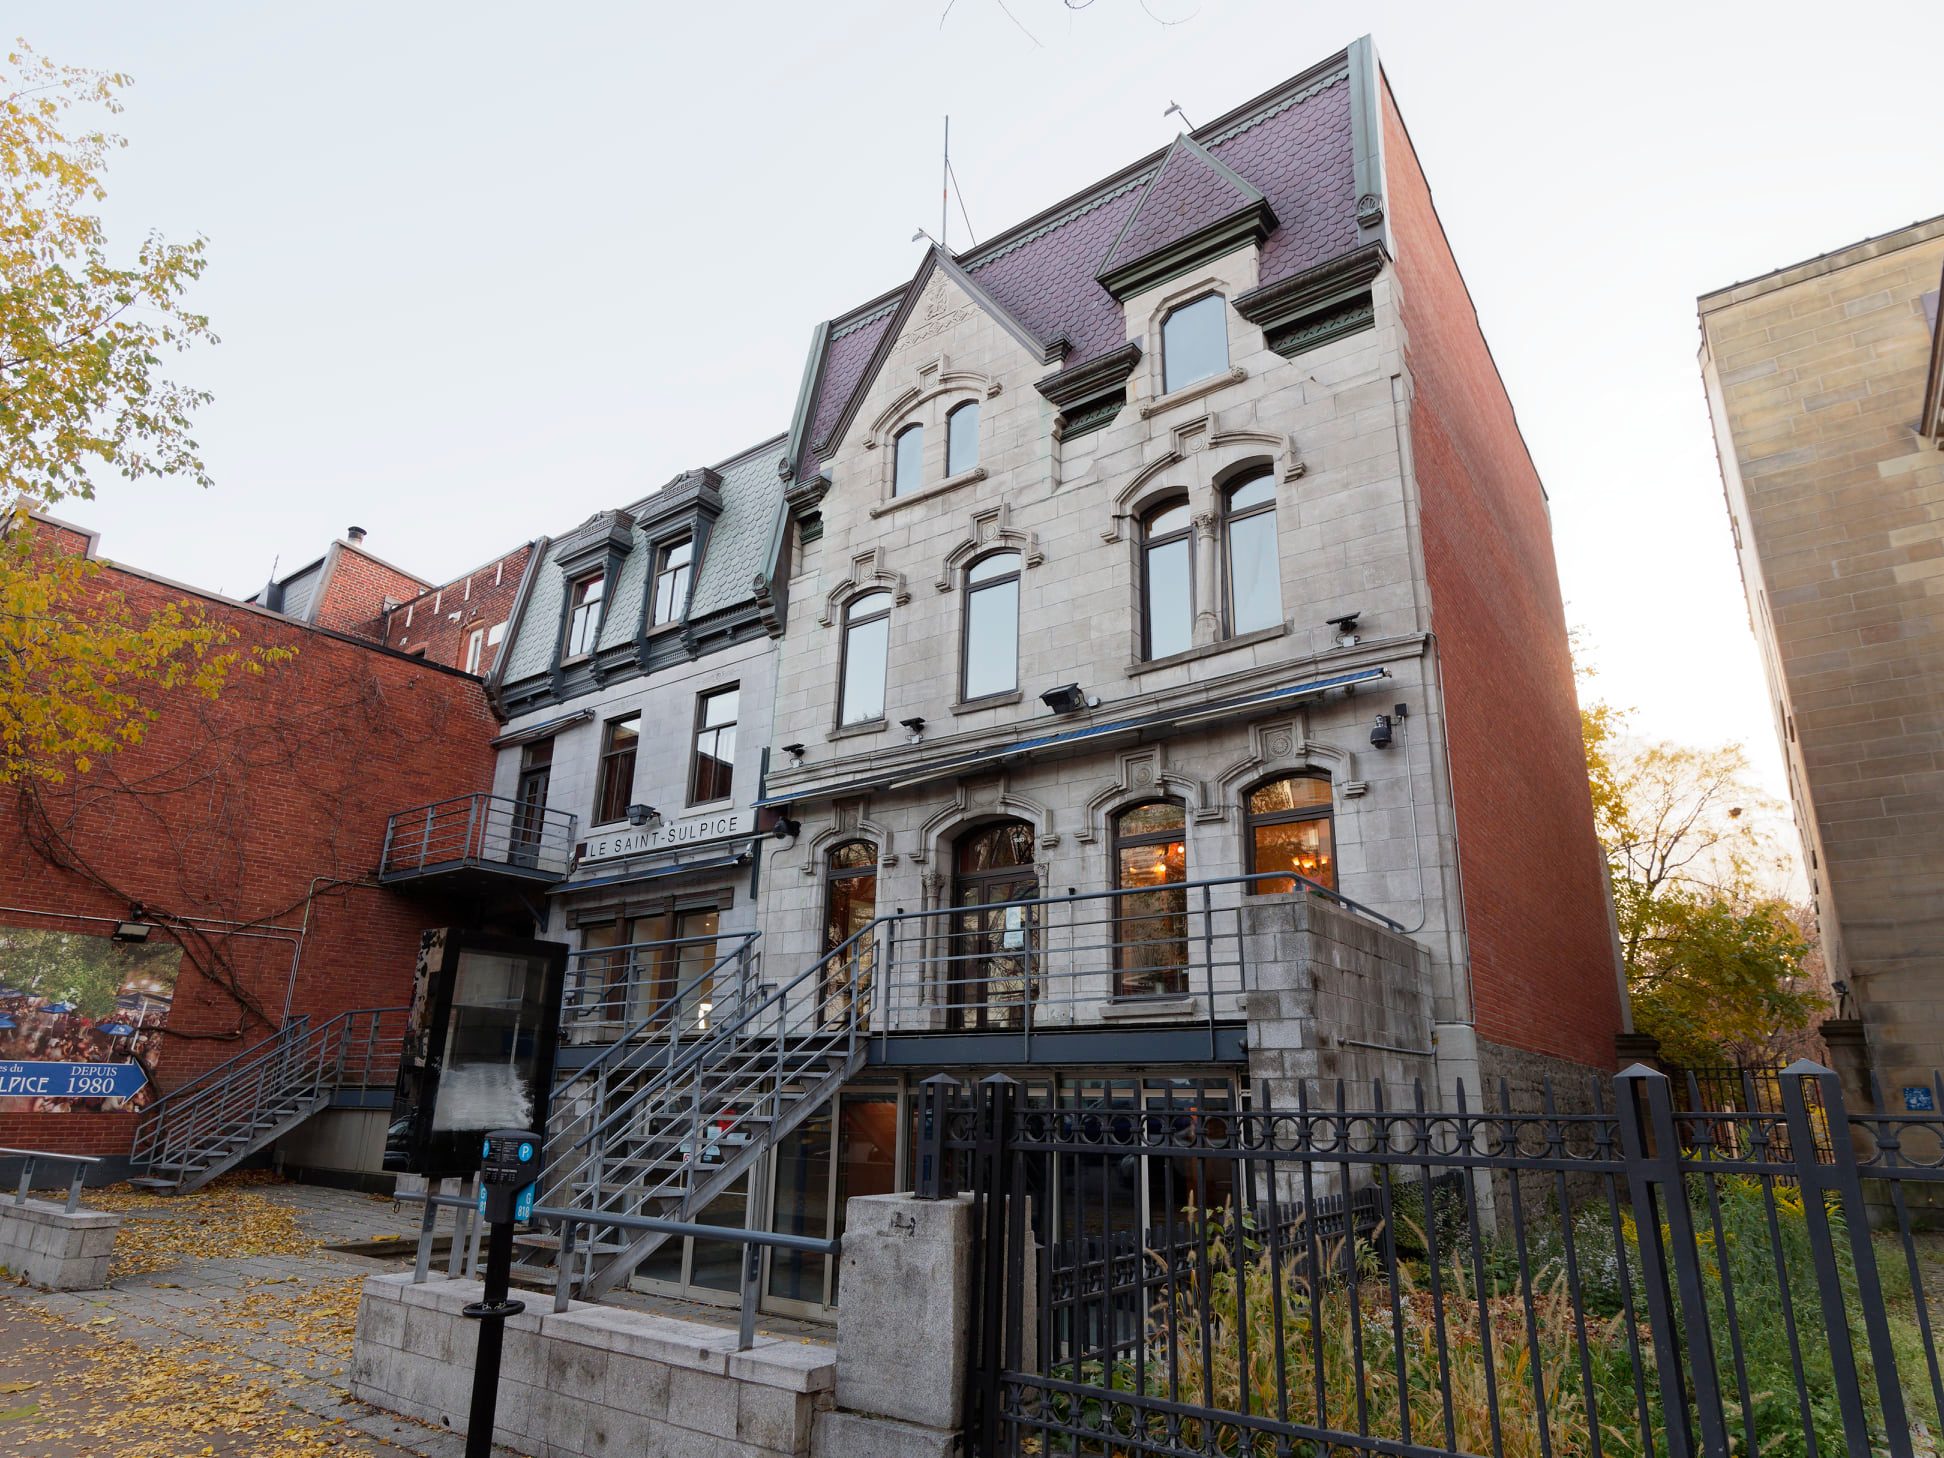 Le légendaire bar Le Saint-Sulpice ferme ses portes à Montréal